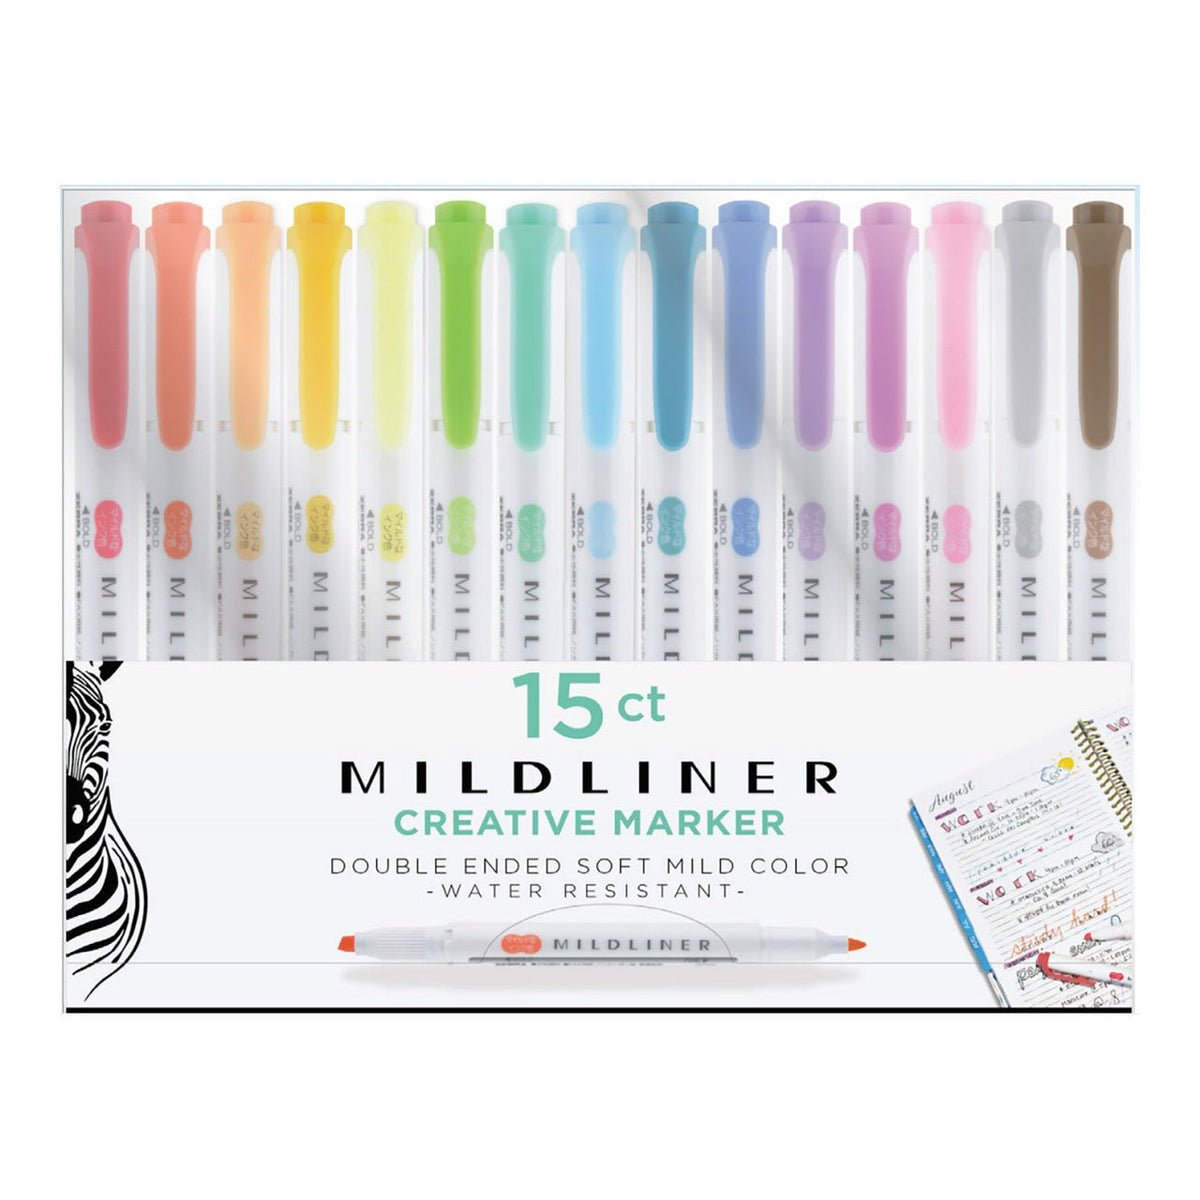 https://merriartist.com/cdn/shop/products/zebra-mildliner-creative-marker-15-color-set-301900_1200x1200_crop_center.jpg?v=1671504876